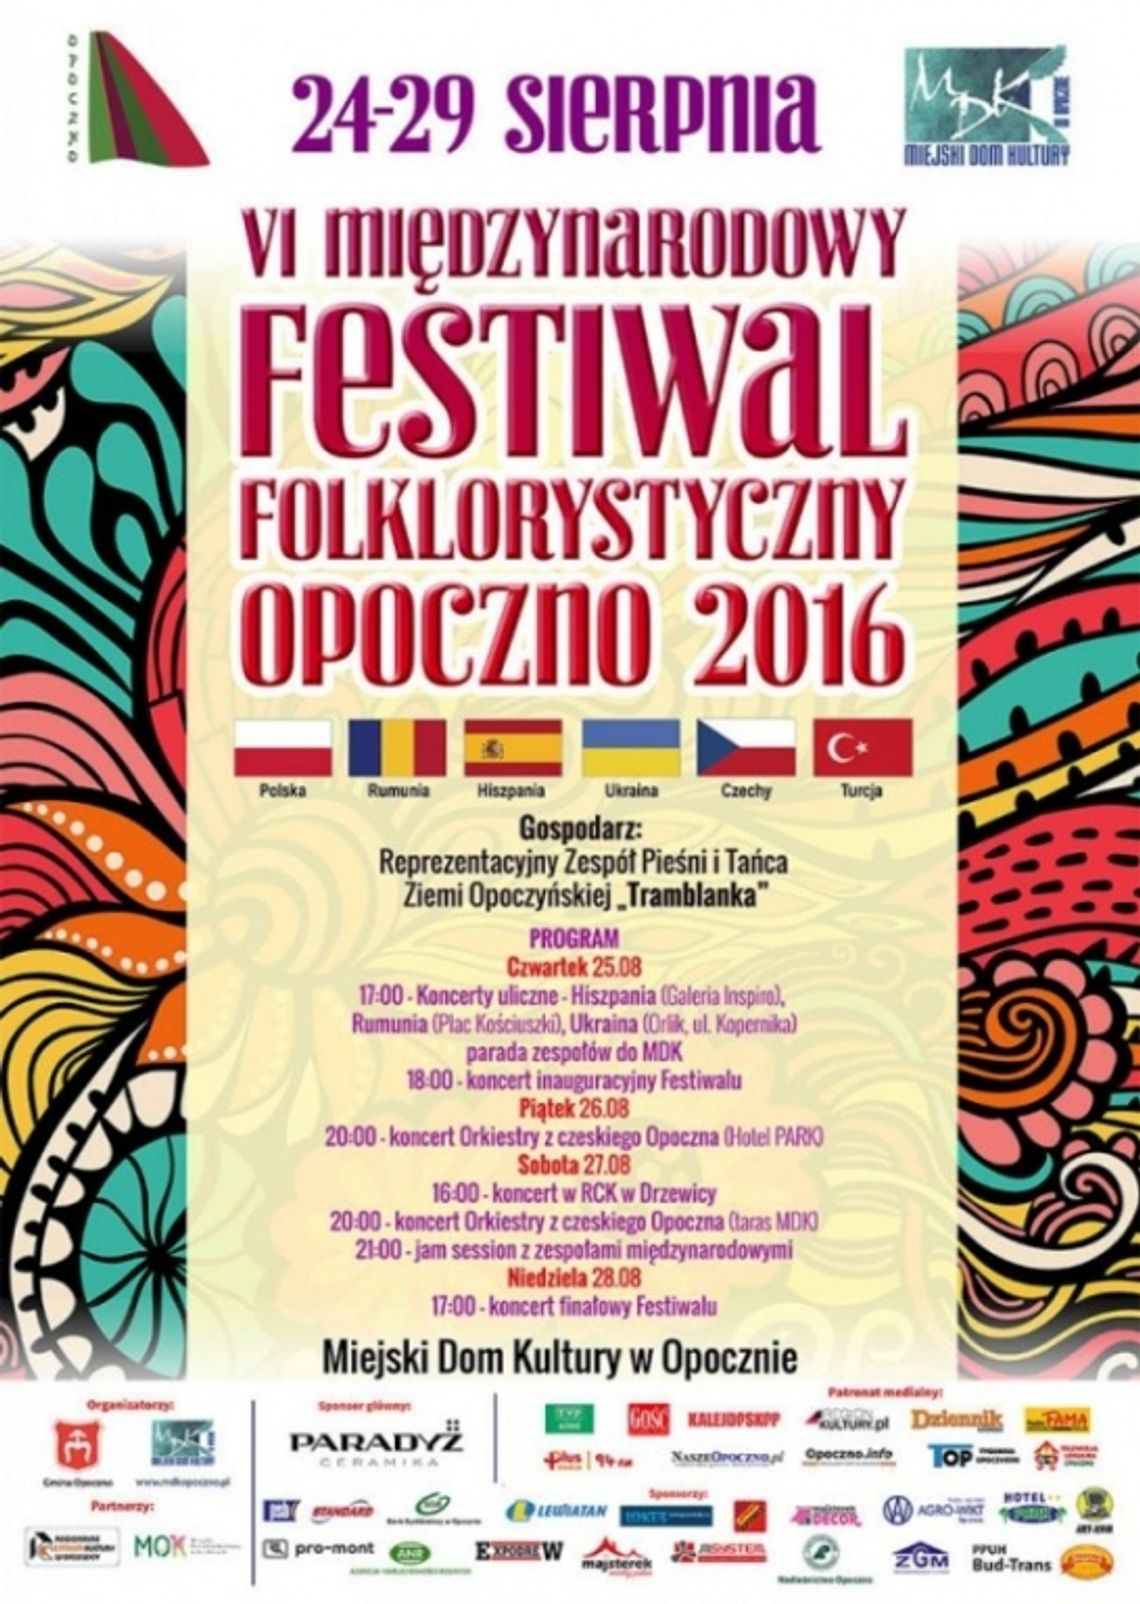 VI Międzynarodowy Festiwal Folklorystyczny Opoczno 2016